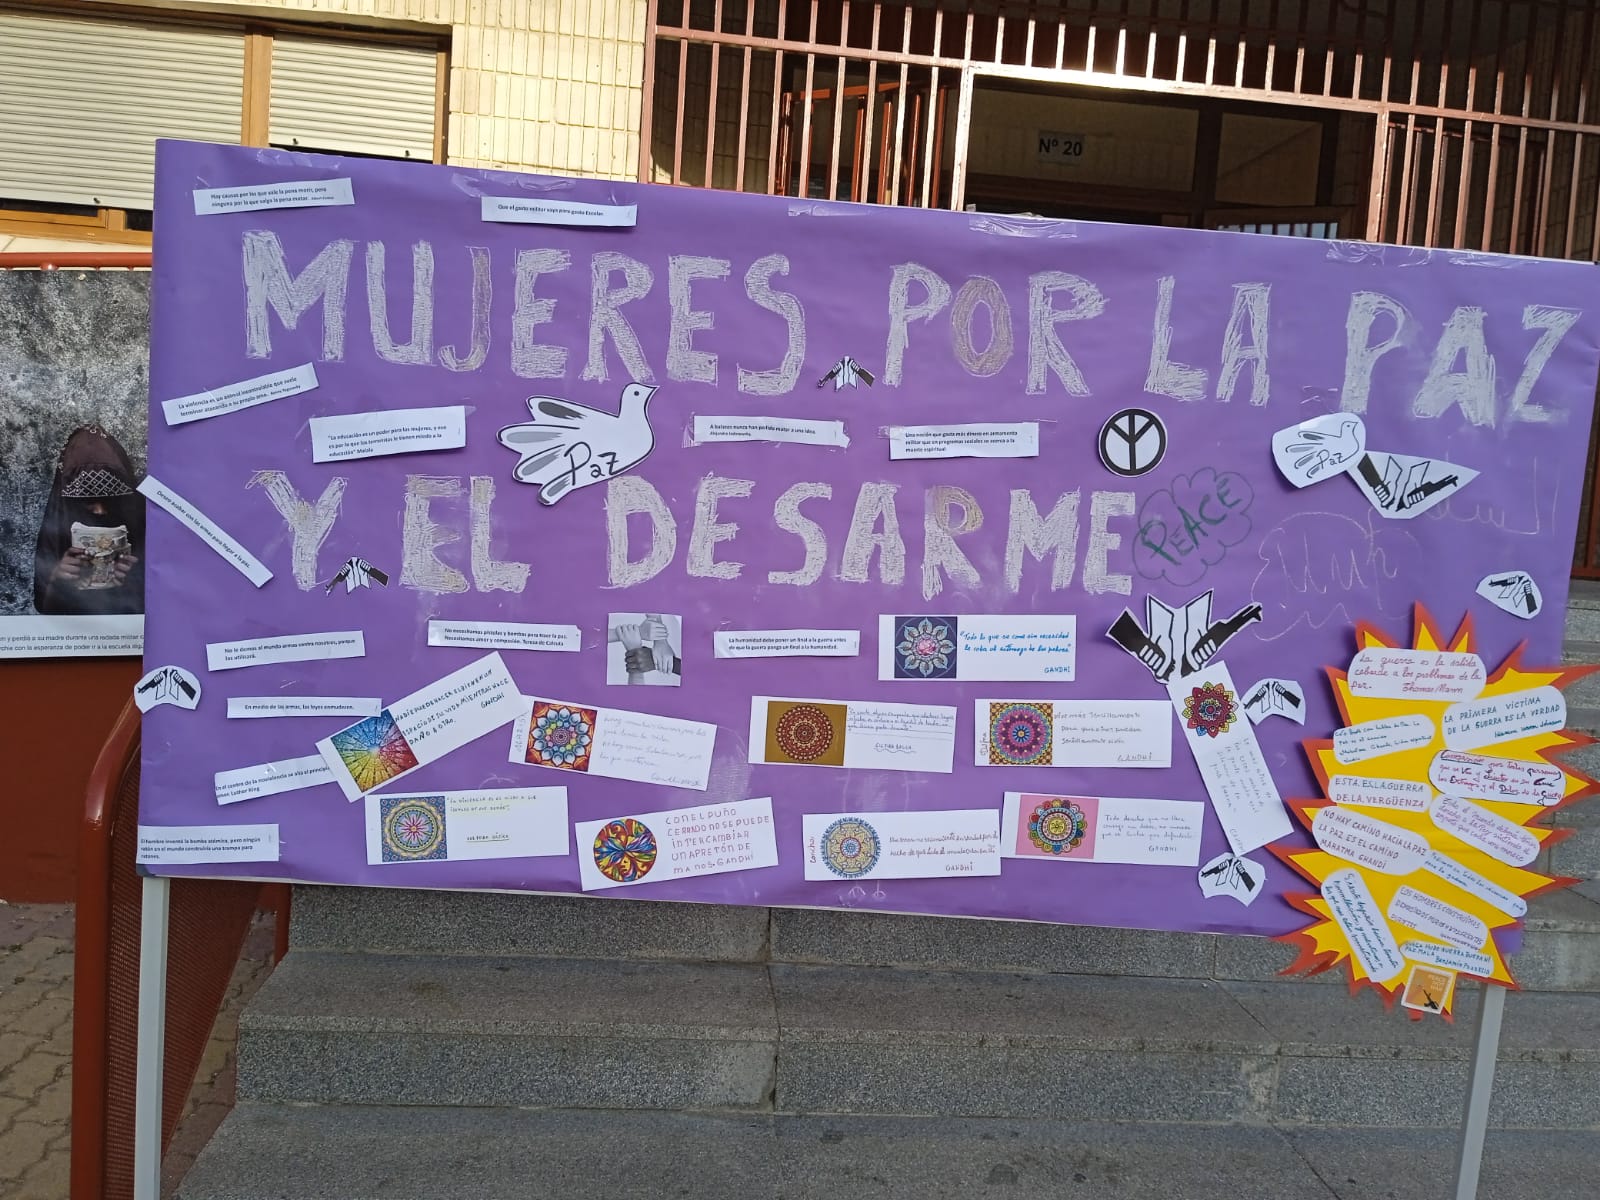 Pancarta en un panel en la calle. En ella está escrito "Mujeres por la paz y el desarme" y otros mensajes en letra más pequeña.